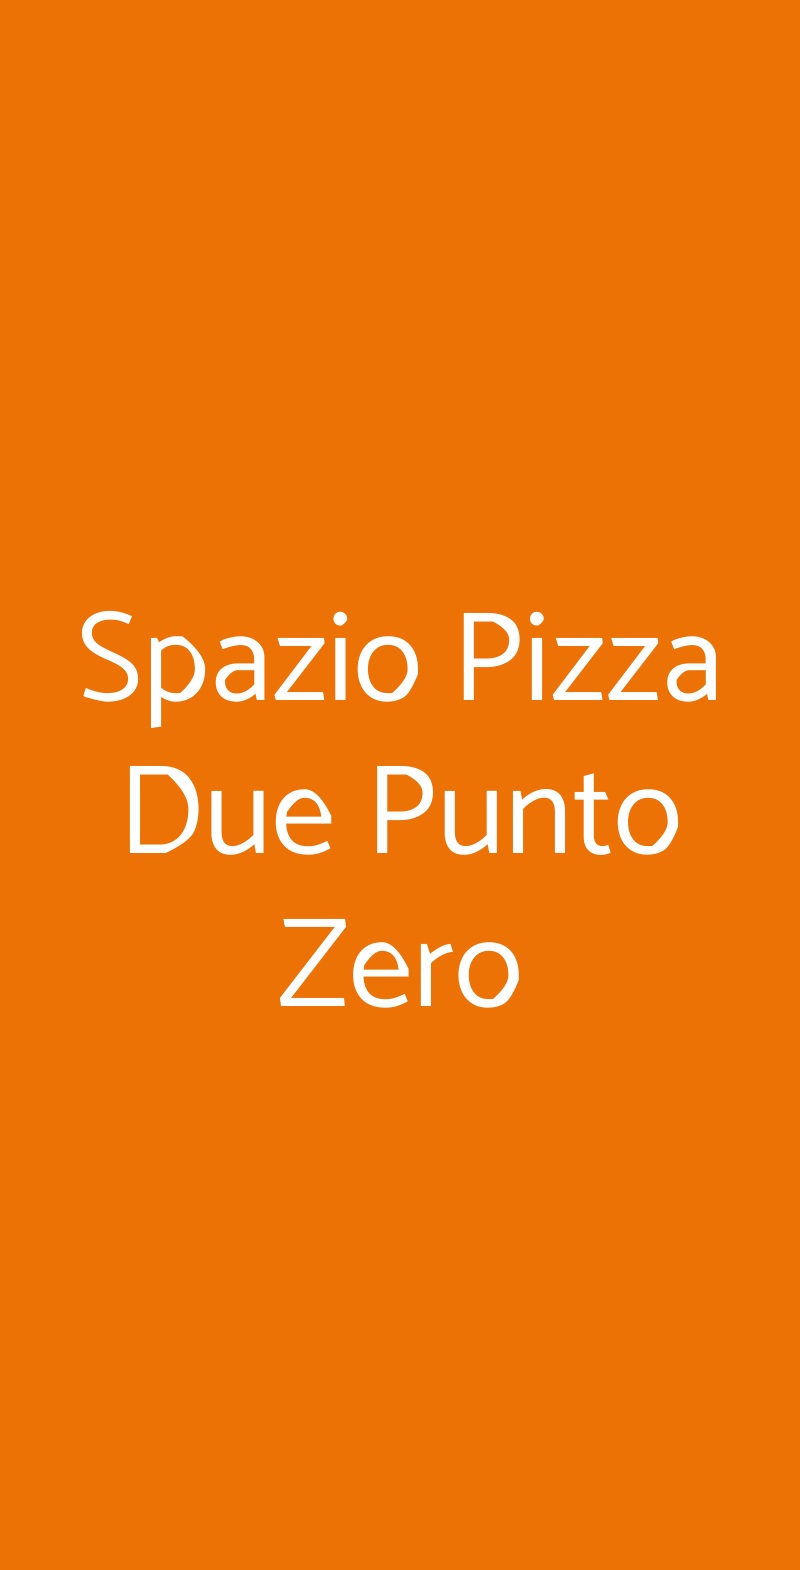 Spazio Pizza Due Punto Zero Rodengo Saiano menù 1 pagina